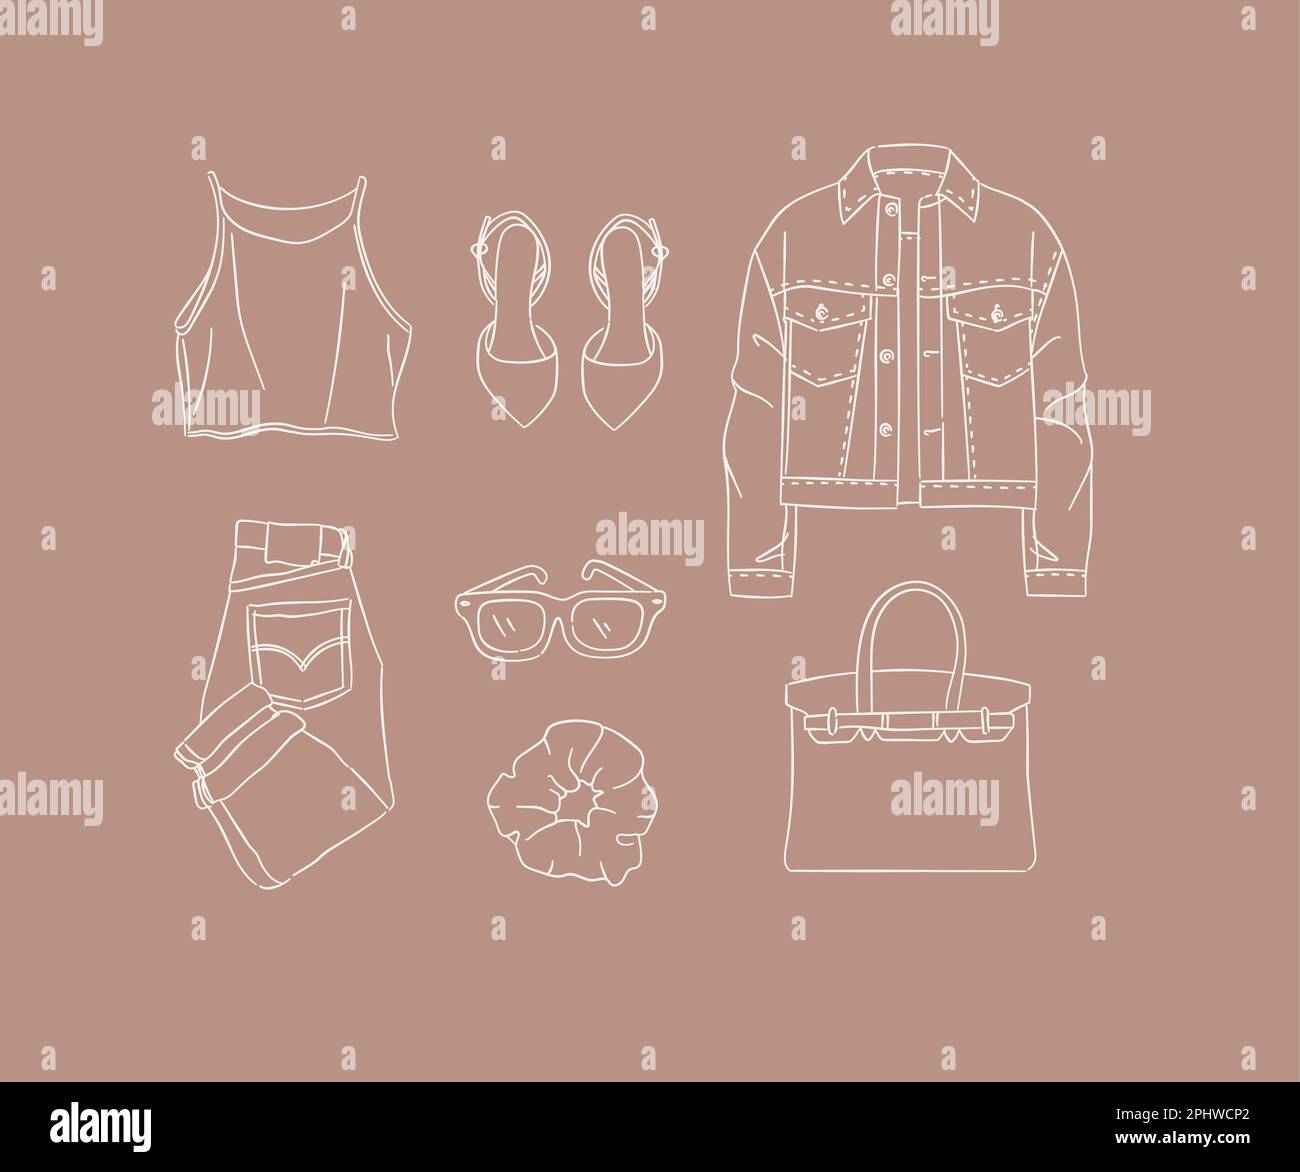 Set di abiti camicetta, scarpe, giacca, jeans, pantaloni, occhiali, forcina, borsa per donna look moderno in stile disegno a mano su sfondo marrone. Illustrazione Vettoriale